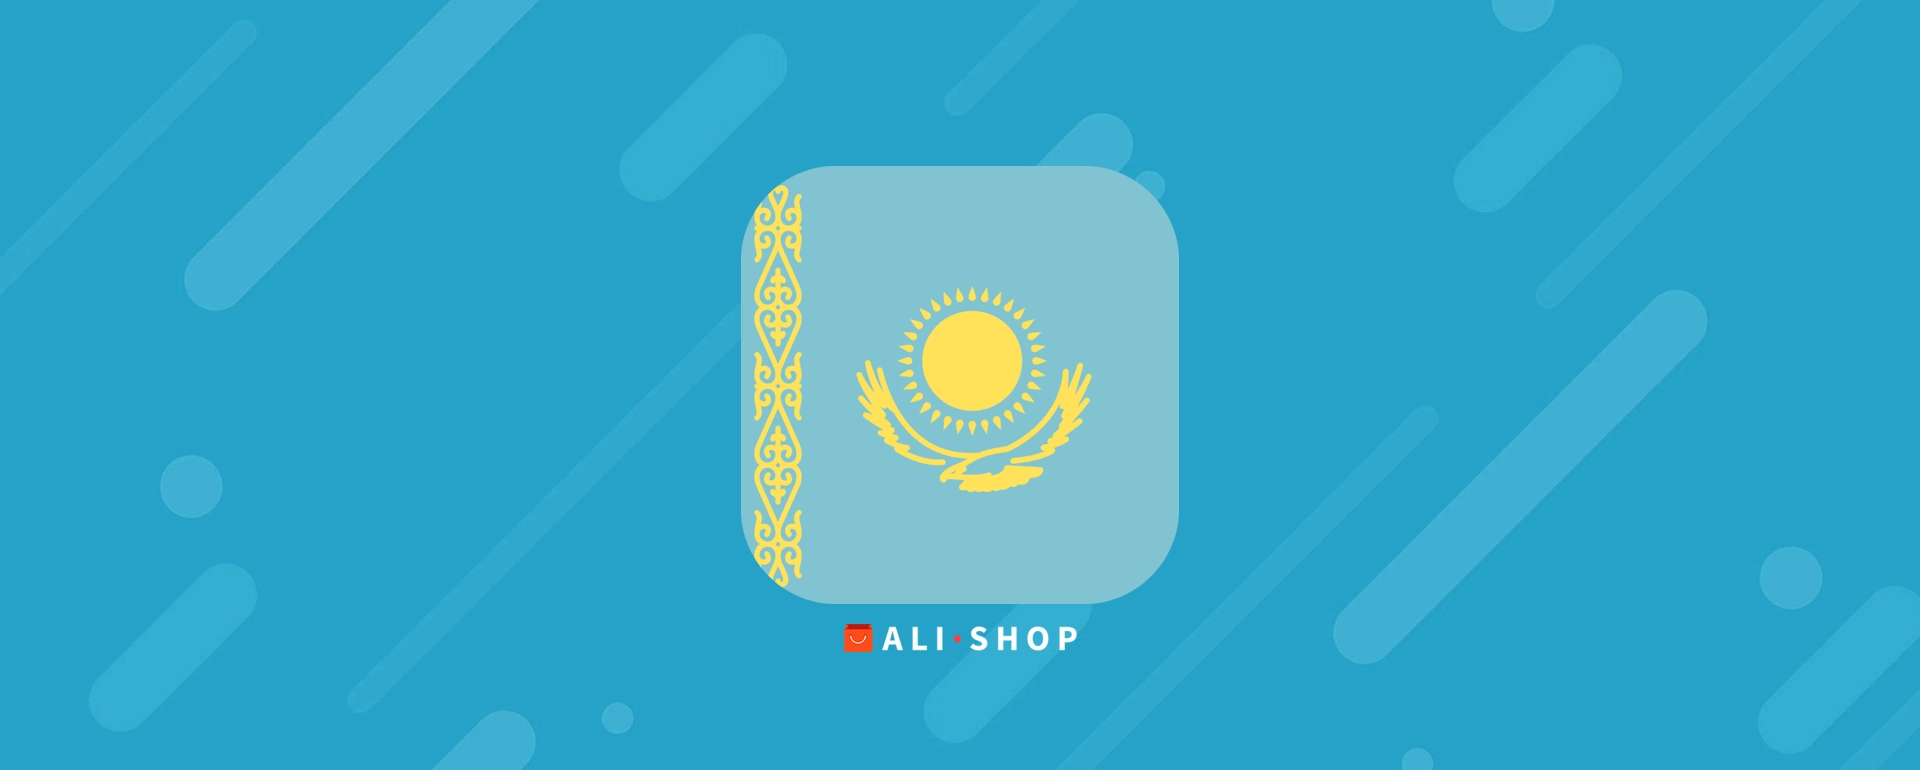 Алиэкспресс в Казахстане — каталог товаров на русском языке